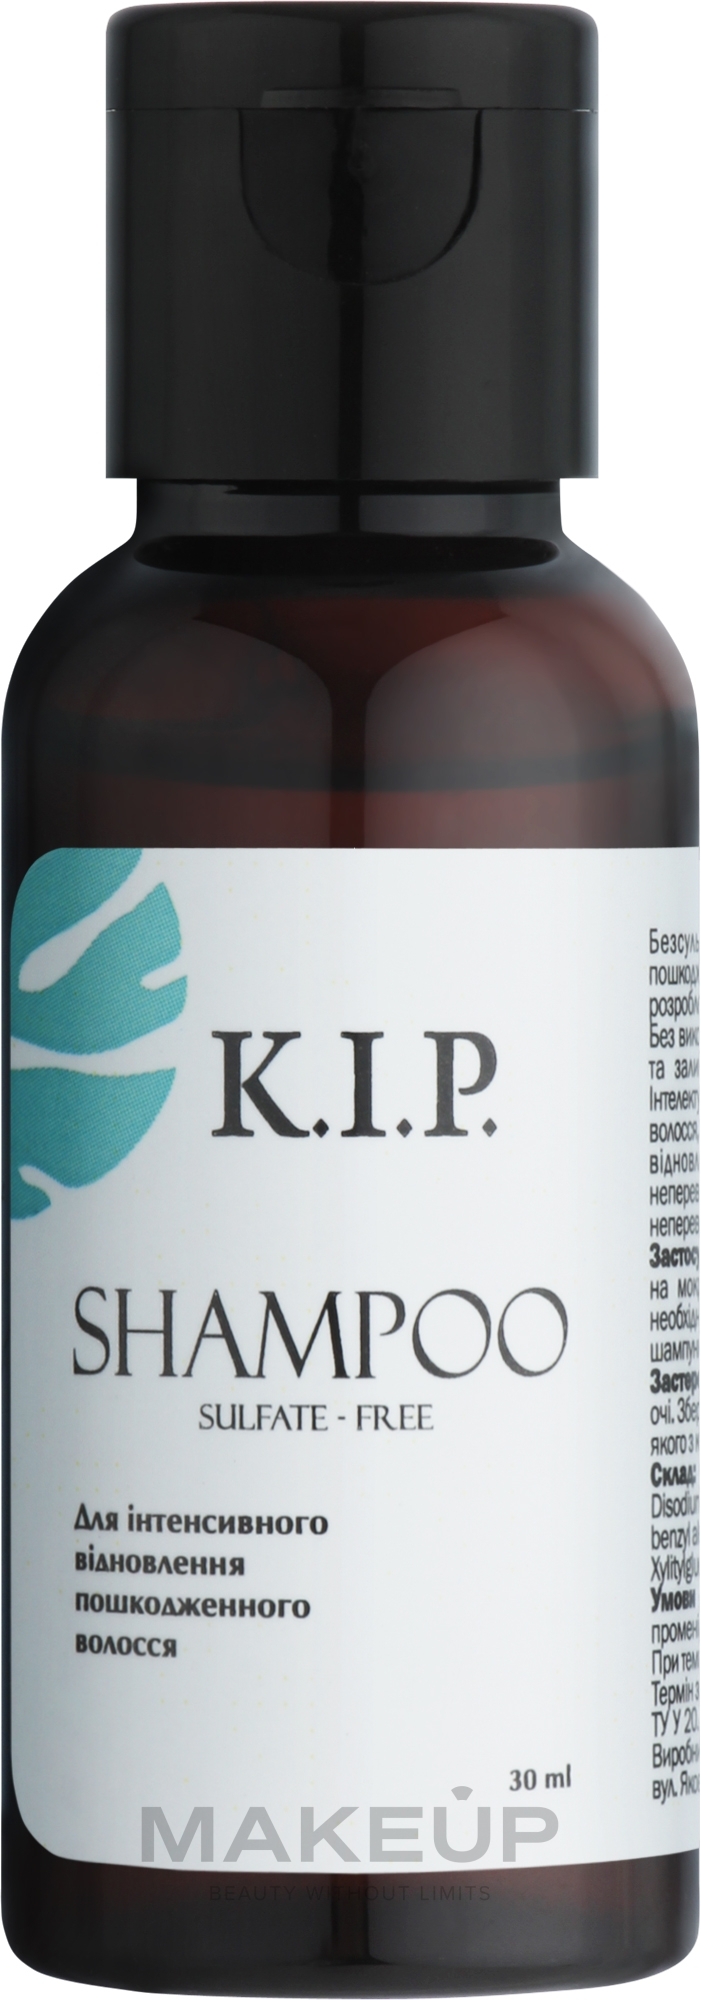 Безсульфатний шампунь для інтенсивного відновлення пошкодженого волосся - K.I.P. Shampoo (пробник) — фото 30ml